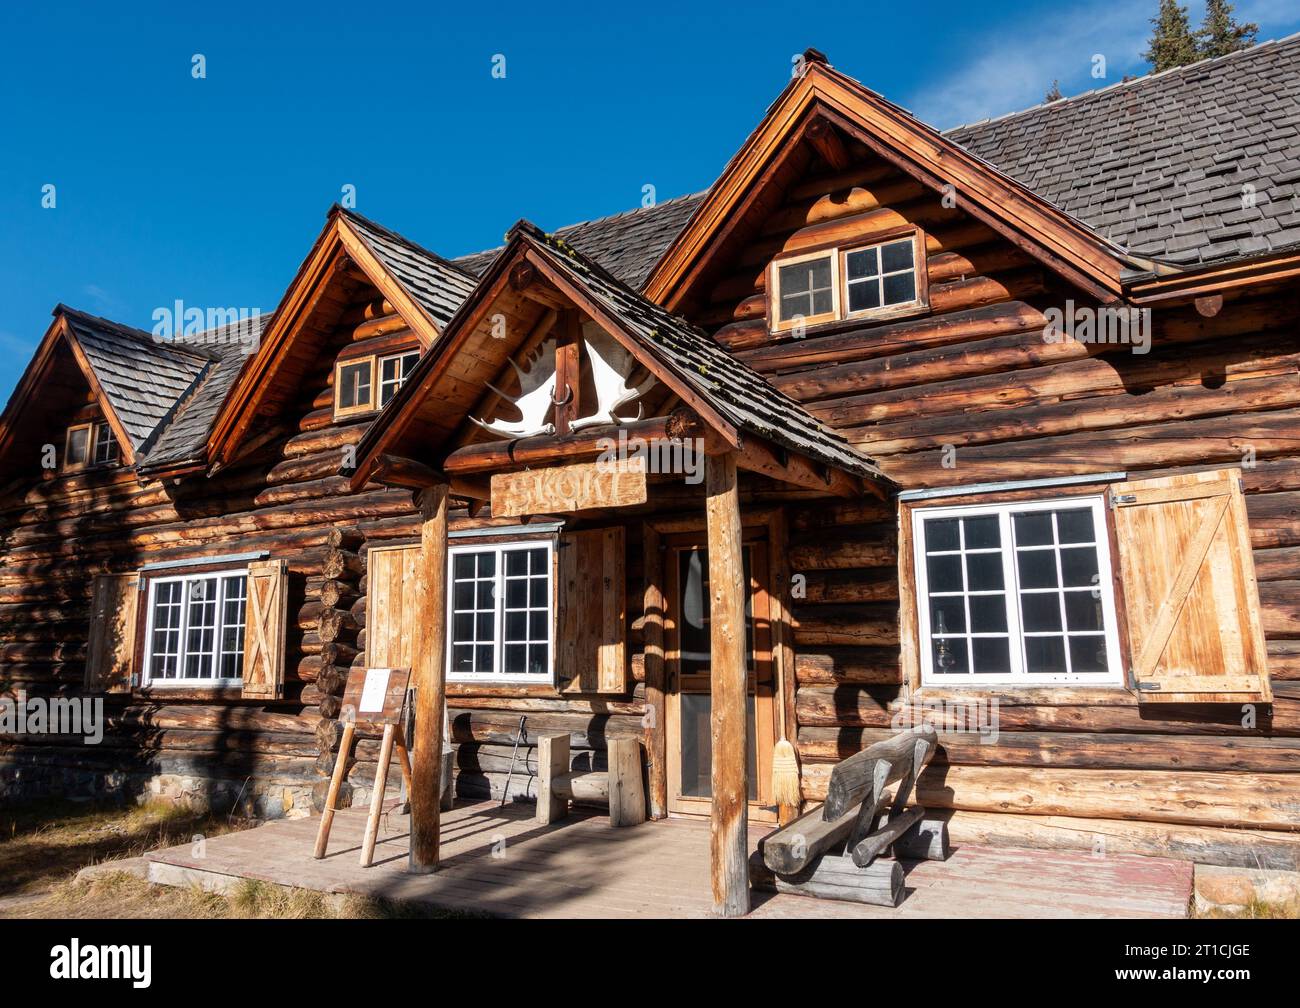 Skoki ski Lodge Wood Log Cabin Facade Building extérieur. Lieu historique national du Canada vue latérale Parc national Banff Rocky Mountains Wilderness Banque D'Images